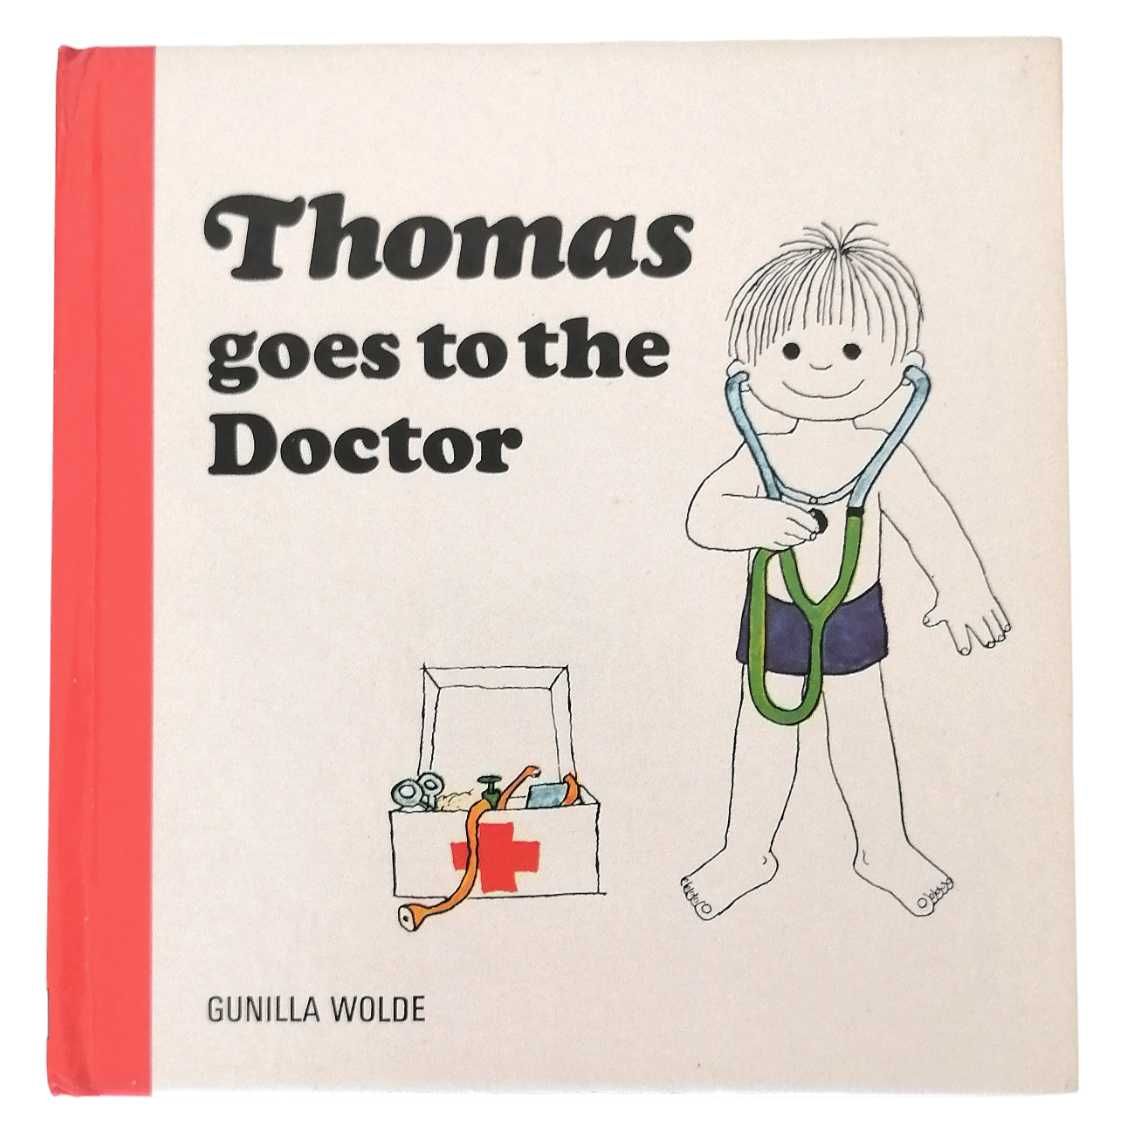 Lote Livros infantis de Thomas em inglês